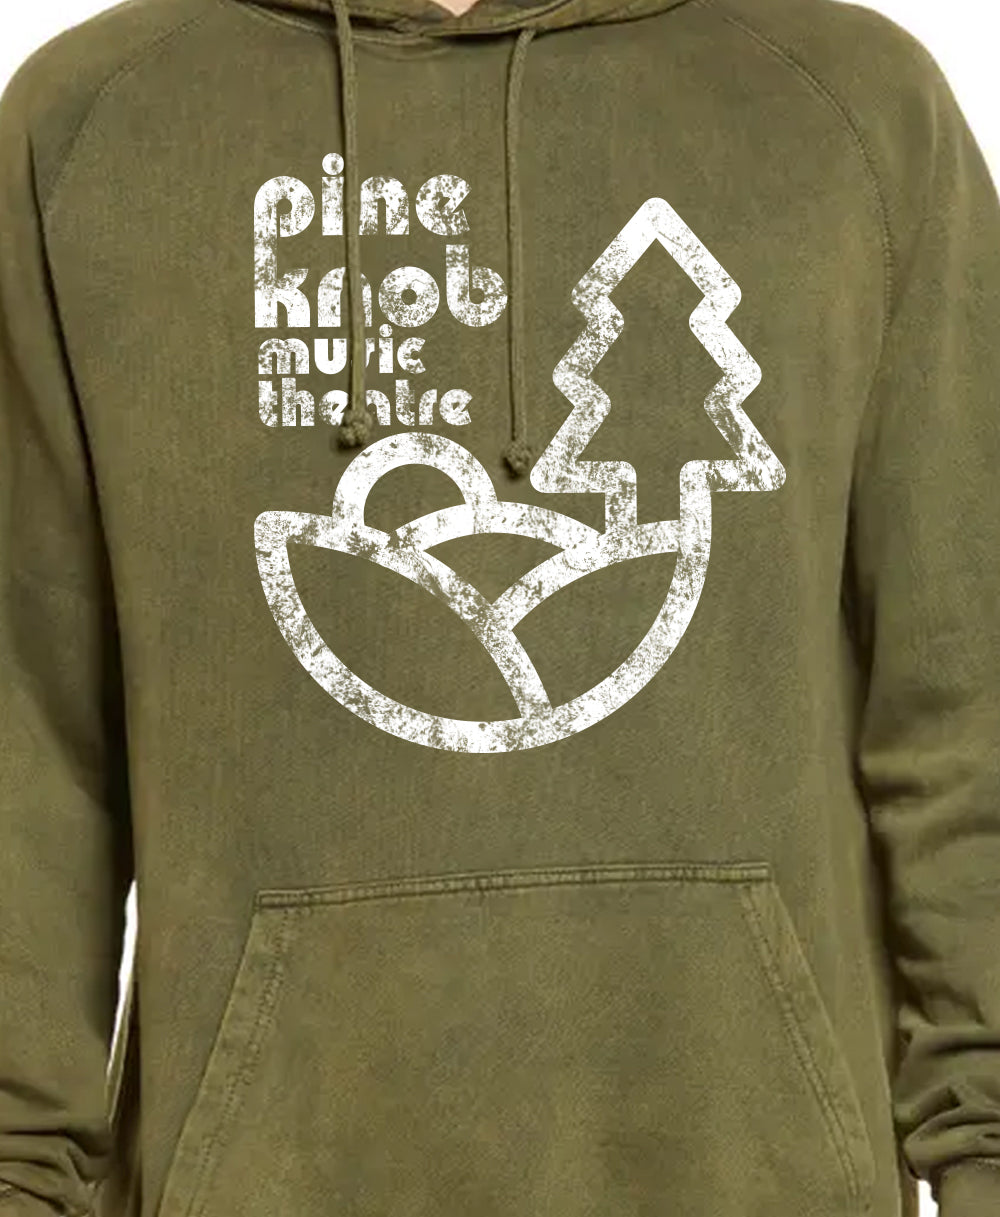 Pine Knob - Vintage Wash Hoodie